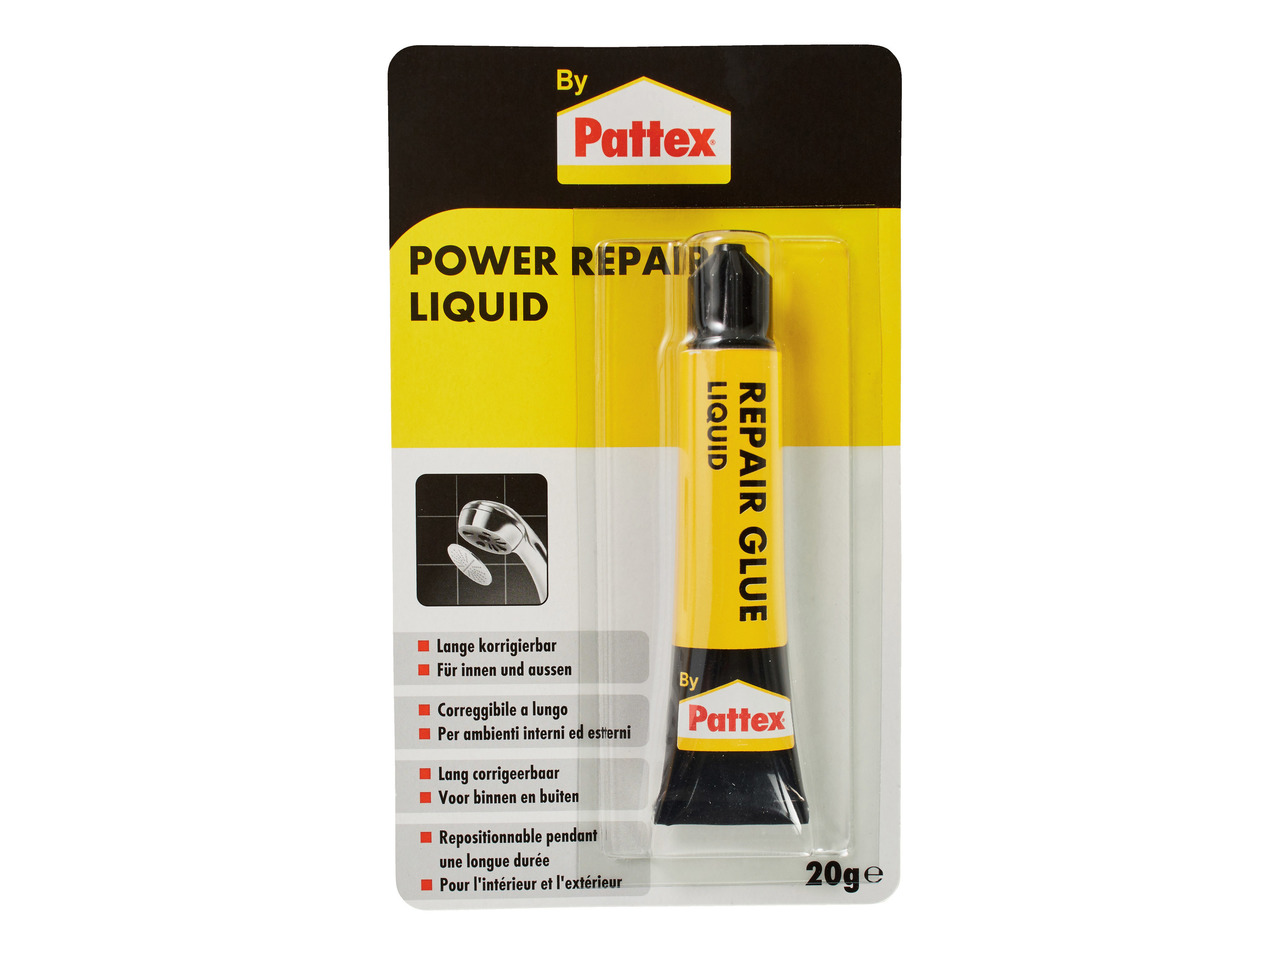 Power Repair Liquid